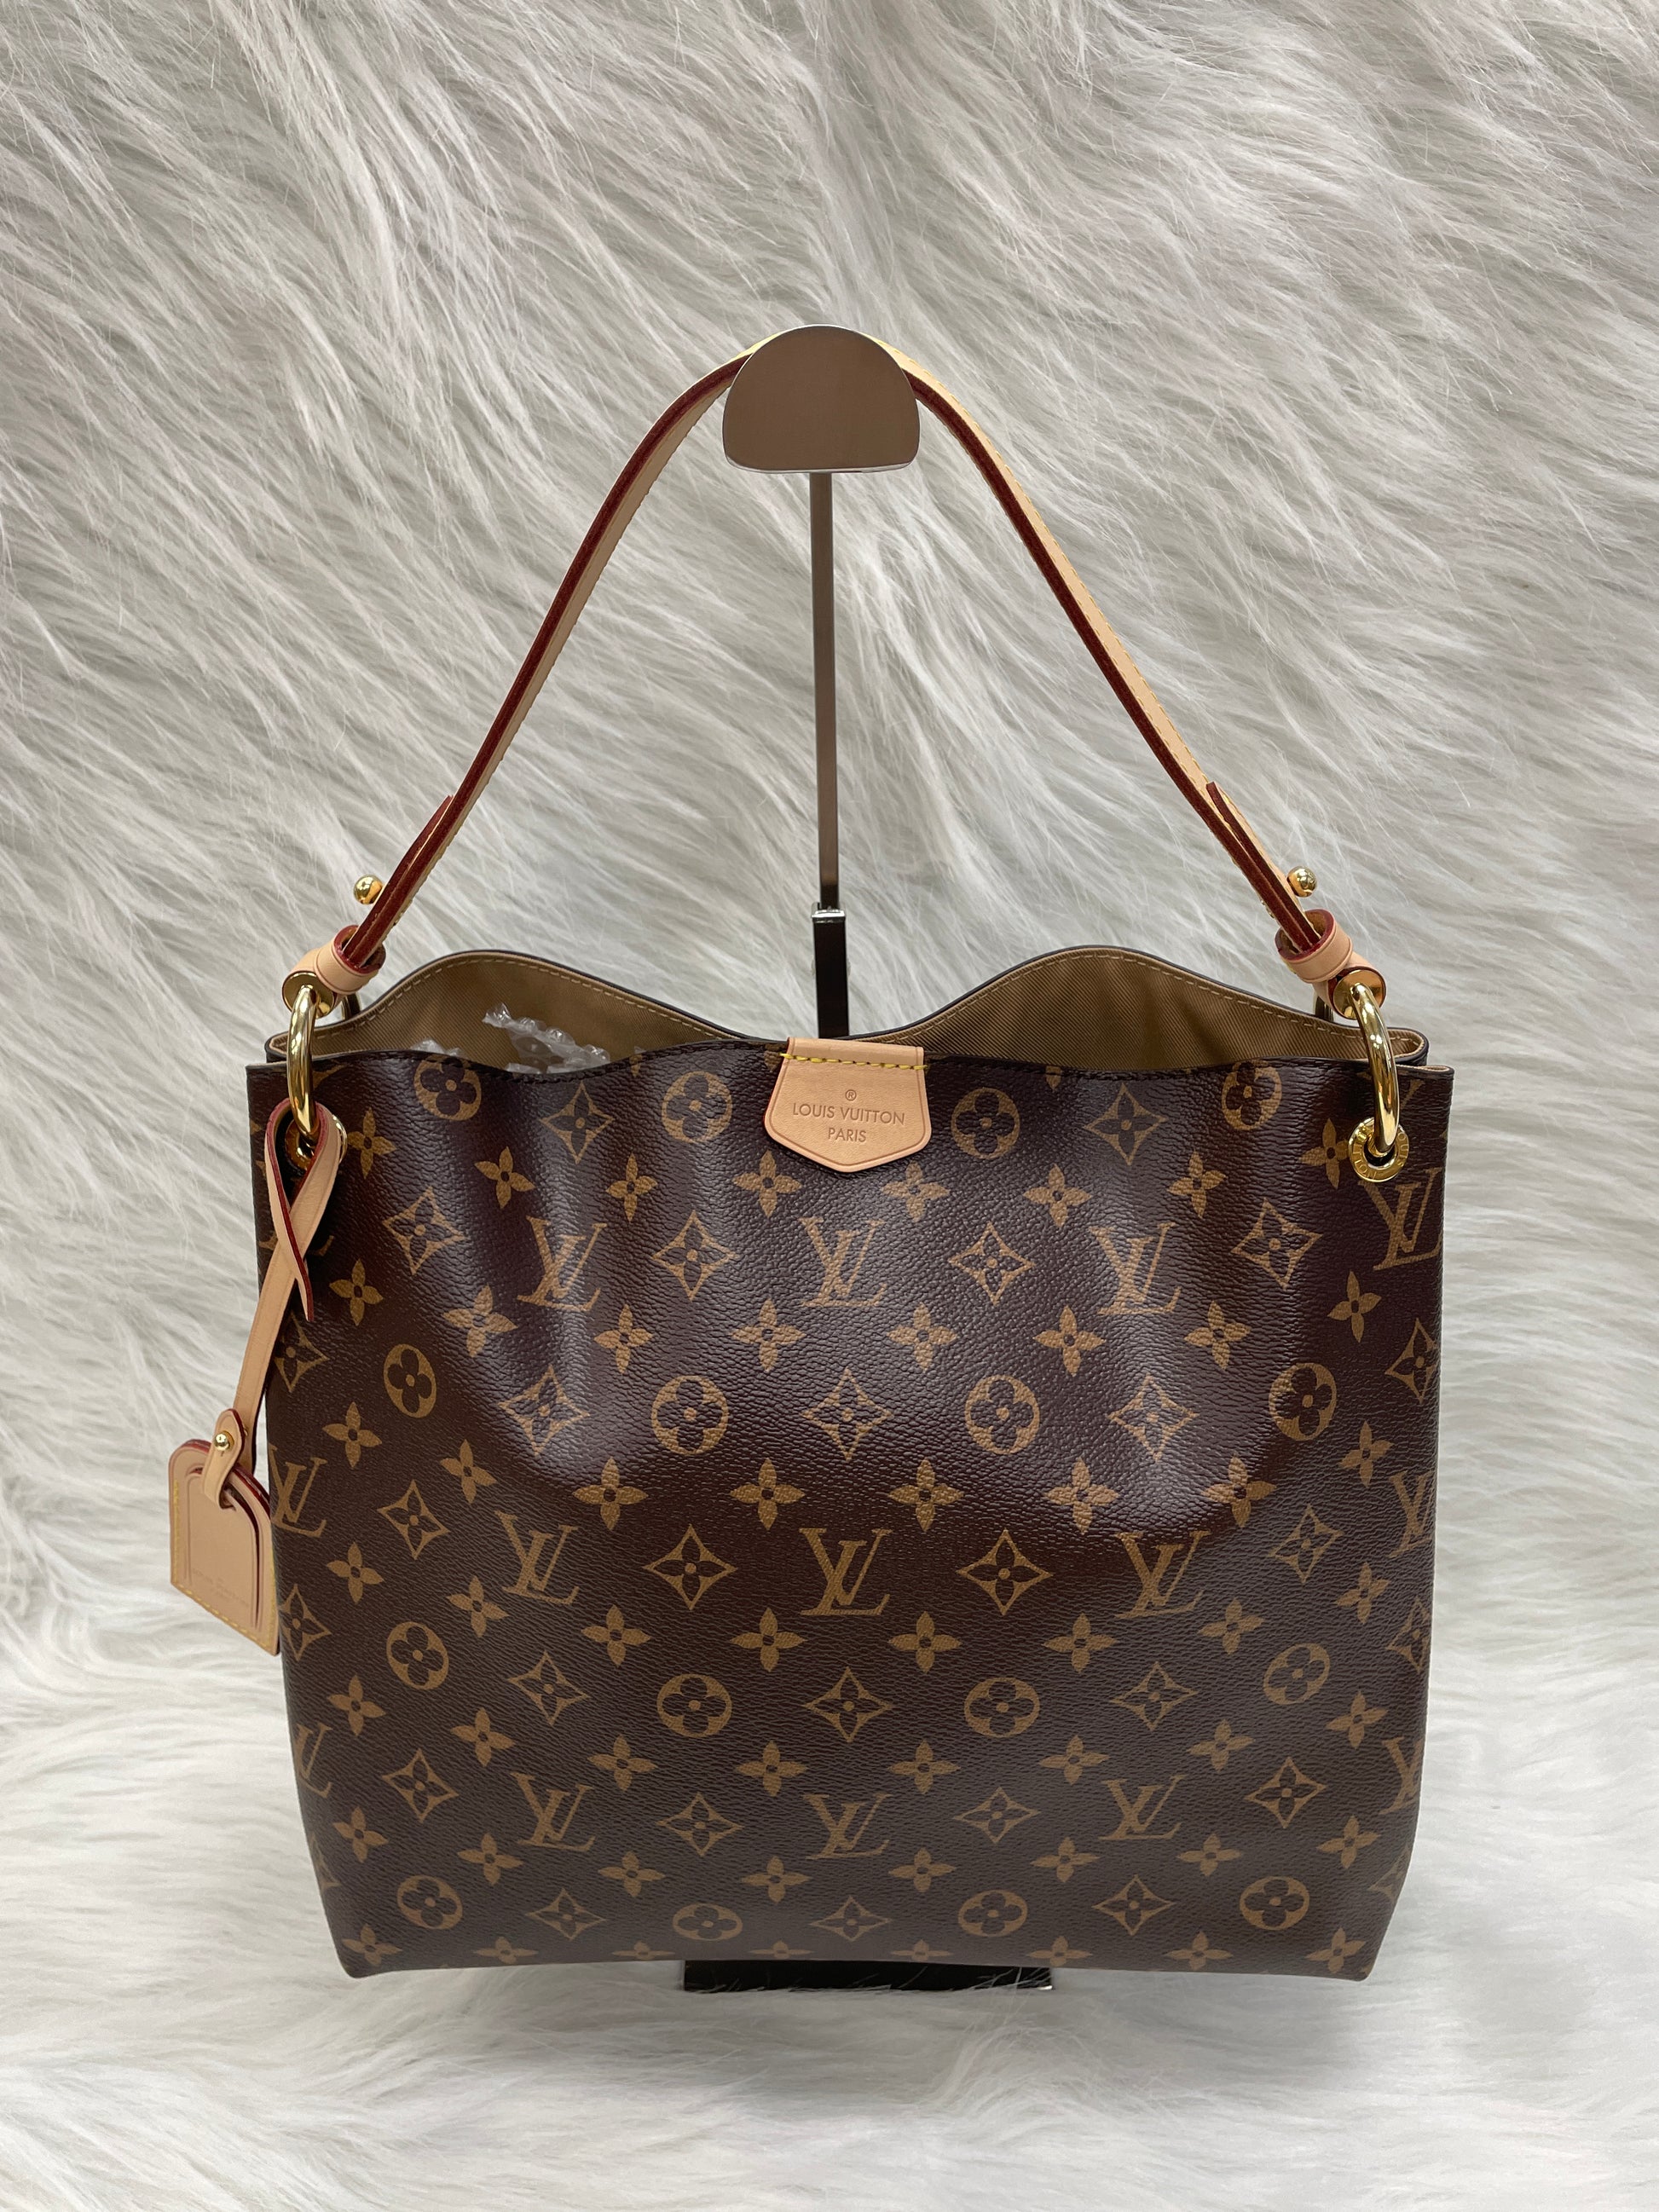 Shop Louis Vuitton MONOGRAM Graceful pm (M43701, M43700) by